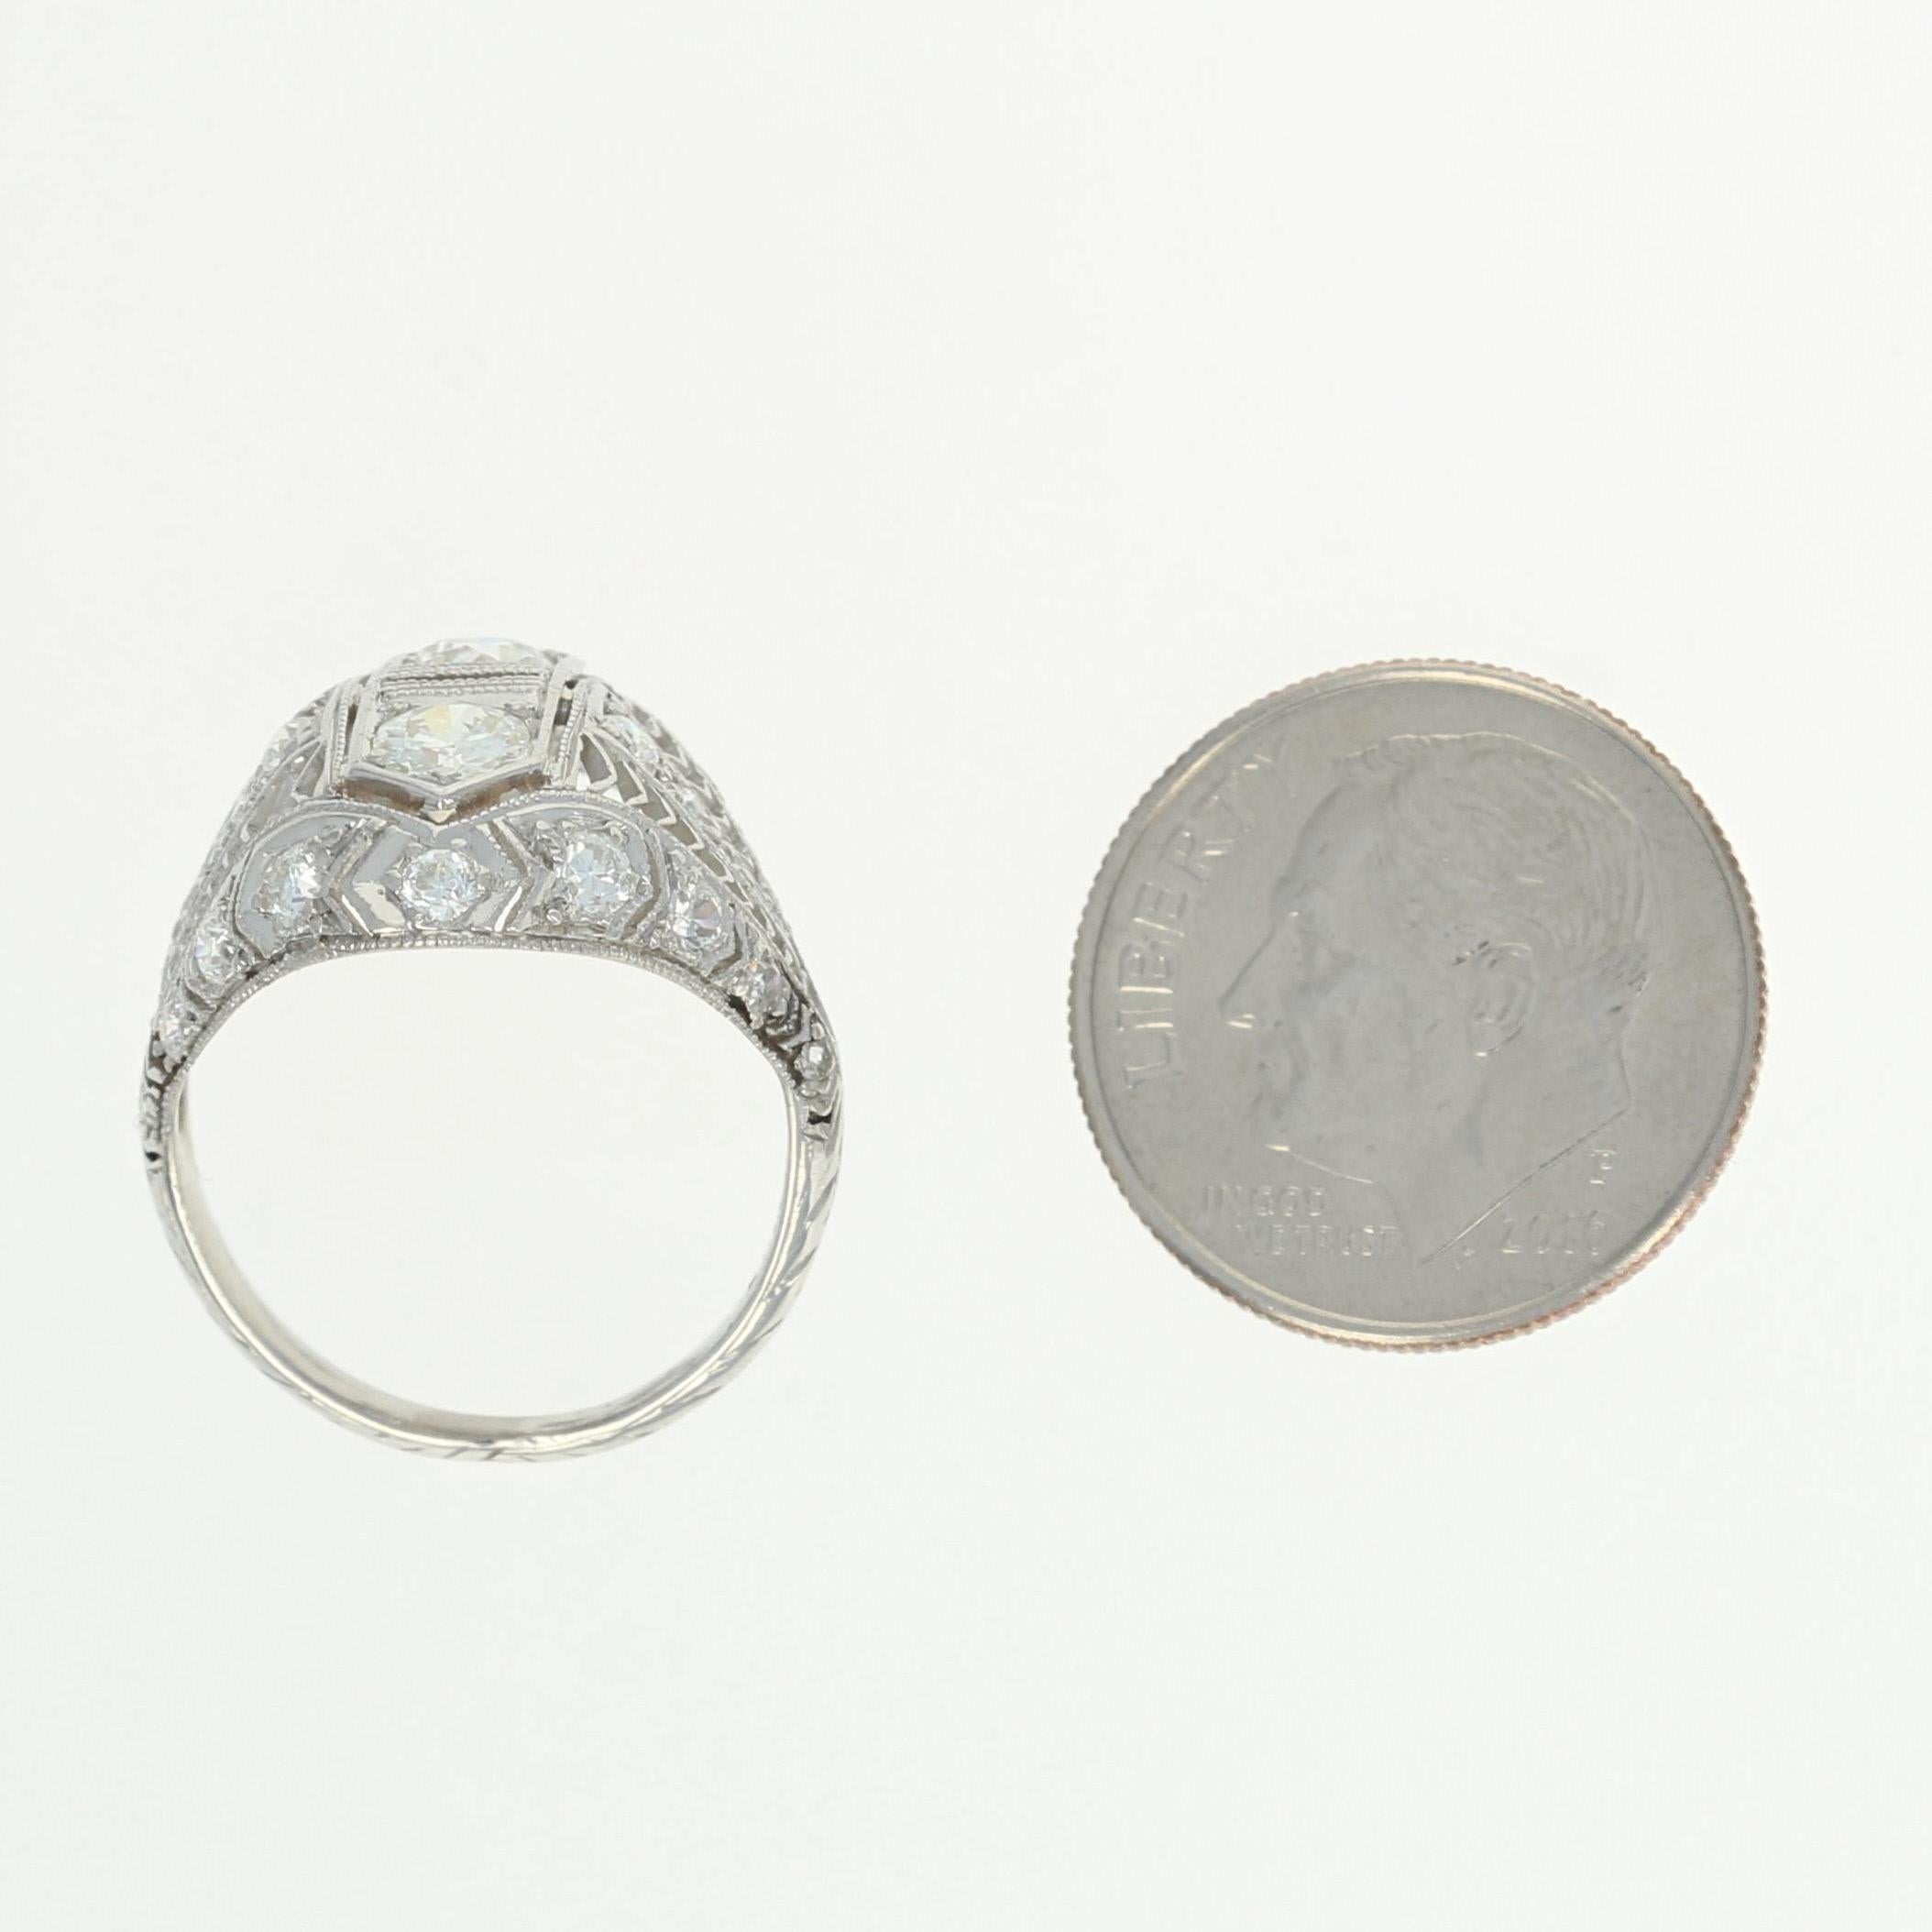 1.22 Carat European Cut Diamond Art Deco Ring, Platinum Vintage 1